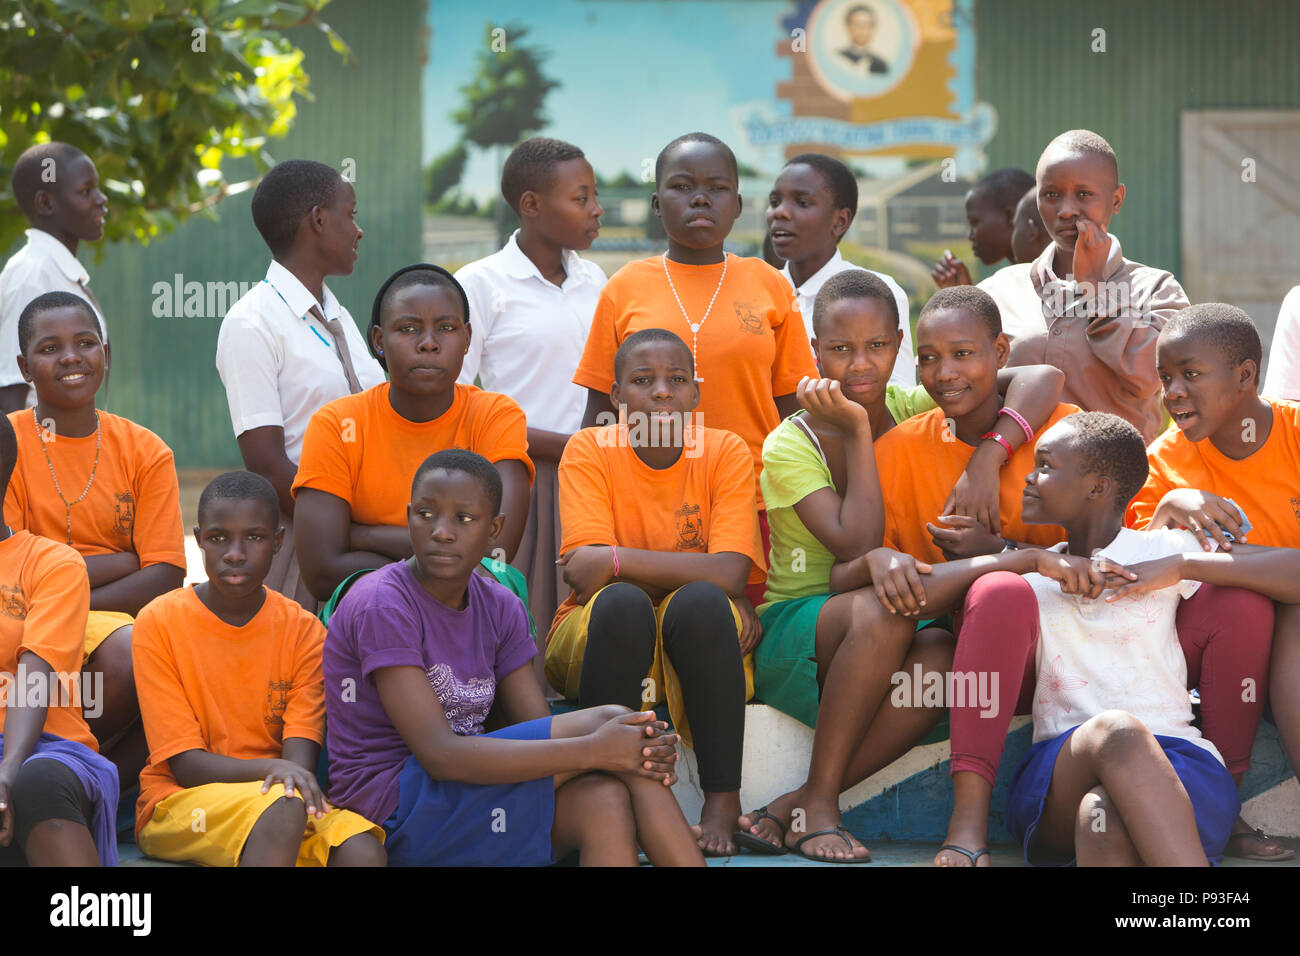 Bombo, Uganda - Students of Don Bosco Vocational Training Center, Bombo. Stock Photo